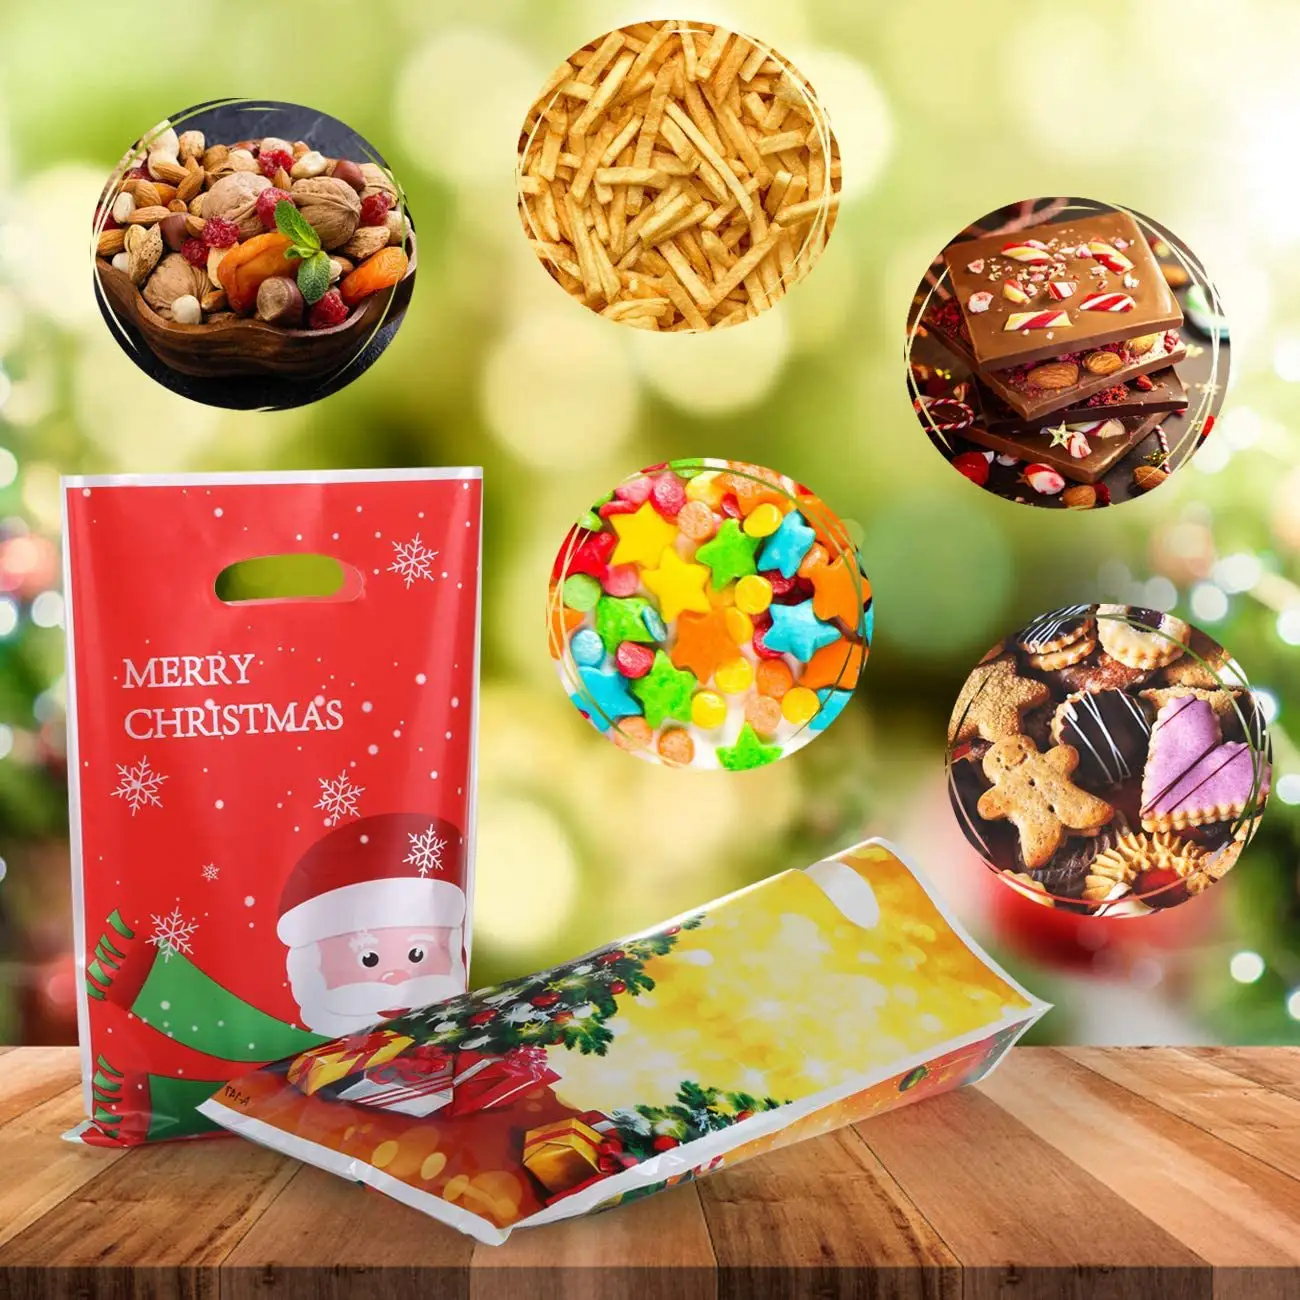 الجملة هدية عيد الميلاد لوازم العام الجديد الديكور الحلوى تغليف لؤلؤي 10 قطعة حزمة عيد الميلاد سخام أكياس